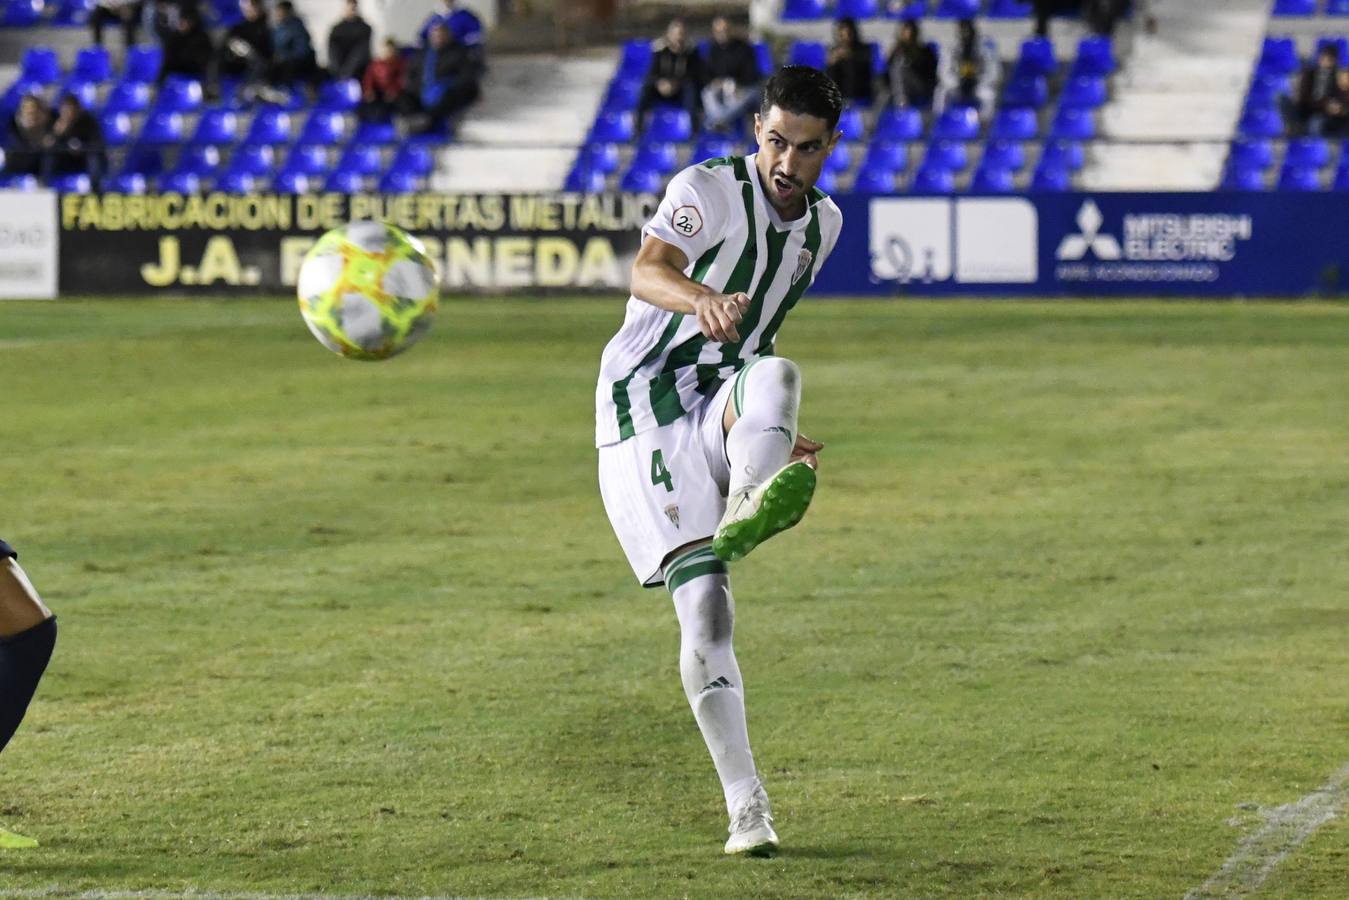 El UCAM-Córdoba CF, en imágenes